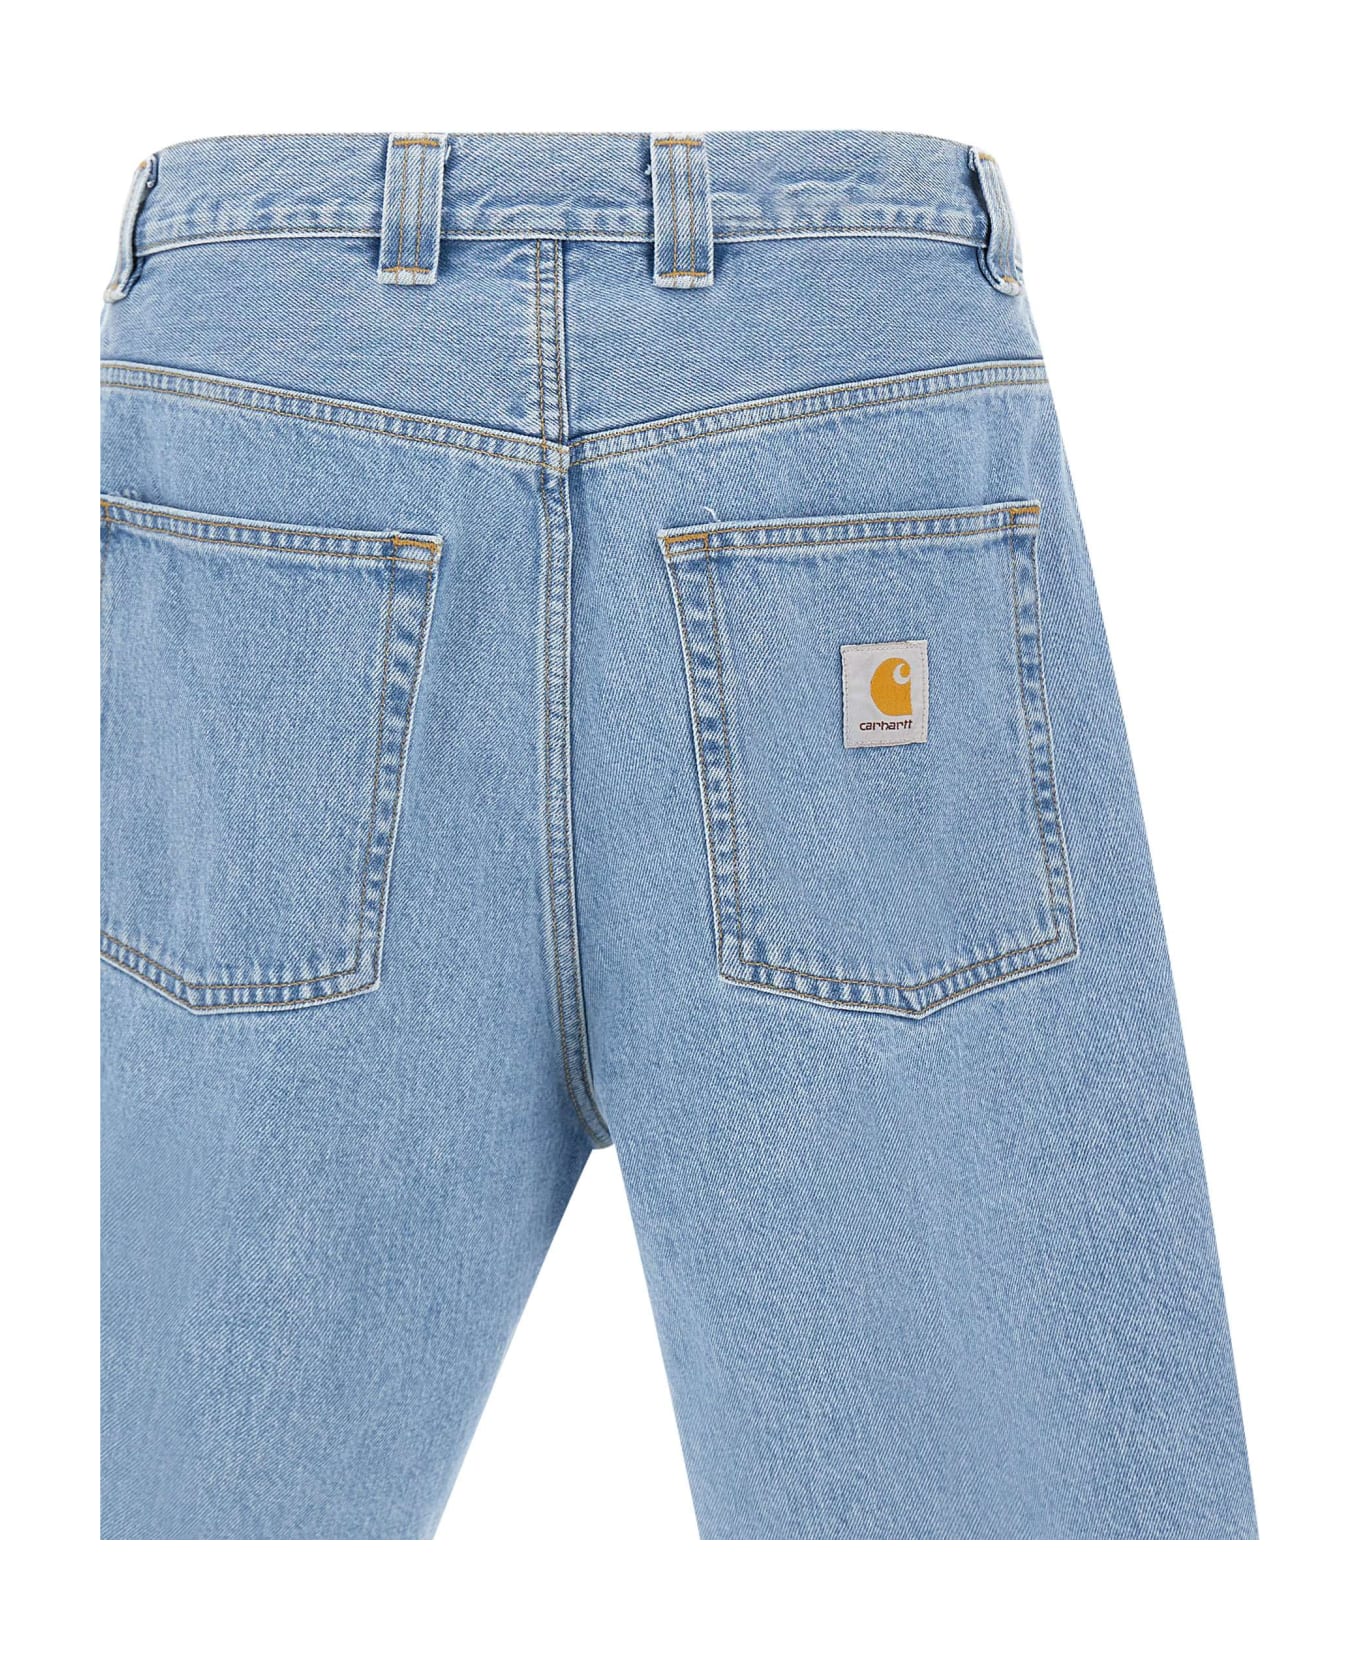 Carhartt 'landon Short' Shorts - BLUE ショートパンツ